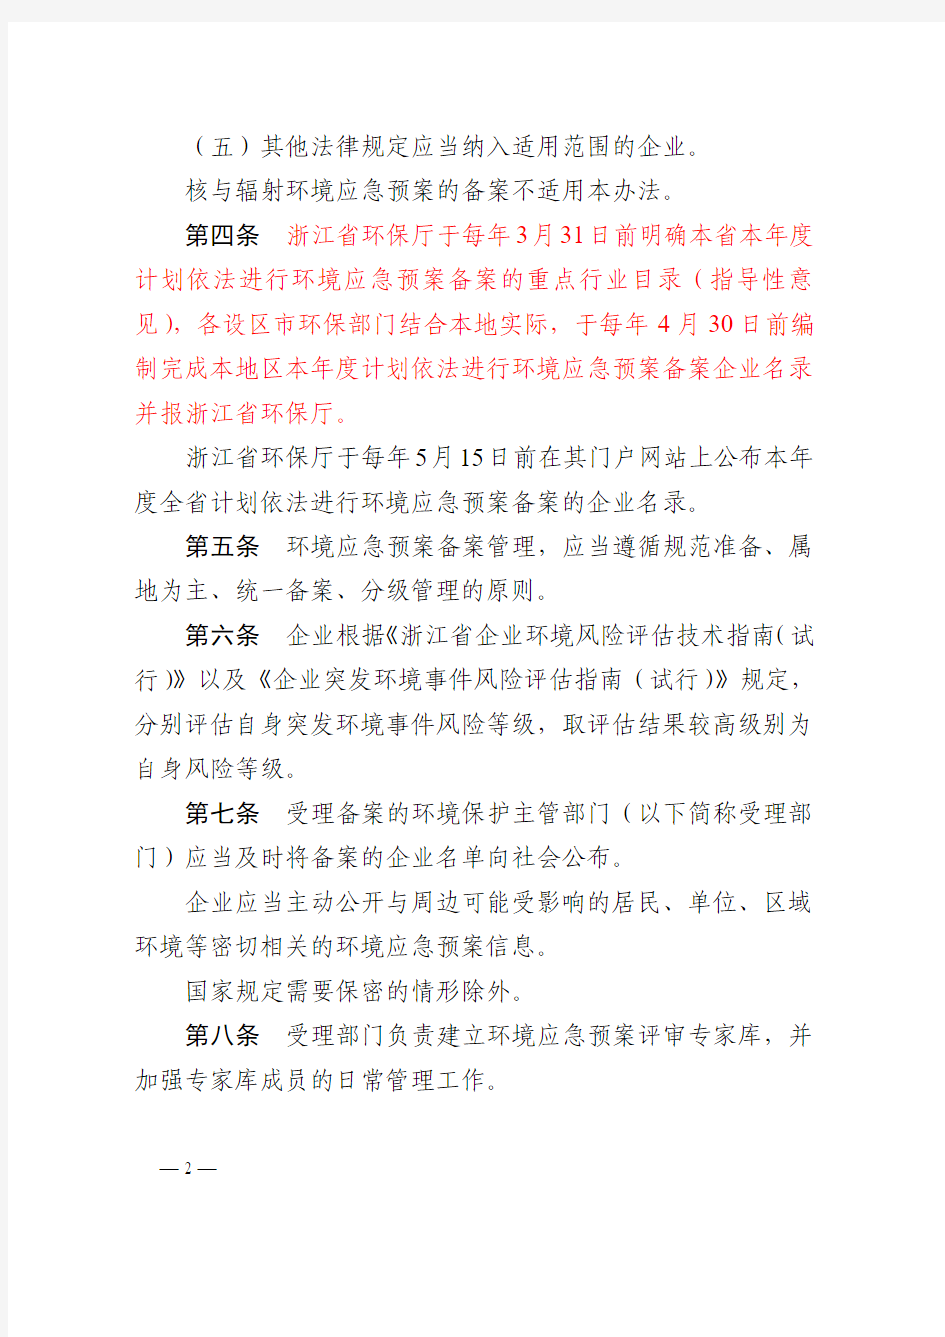 浙江省企业事业单位突发环境事件应急预案管理实施办法1.28